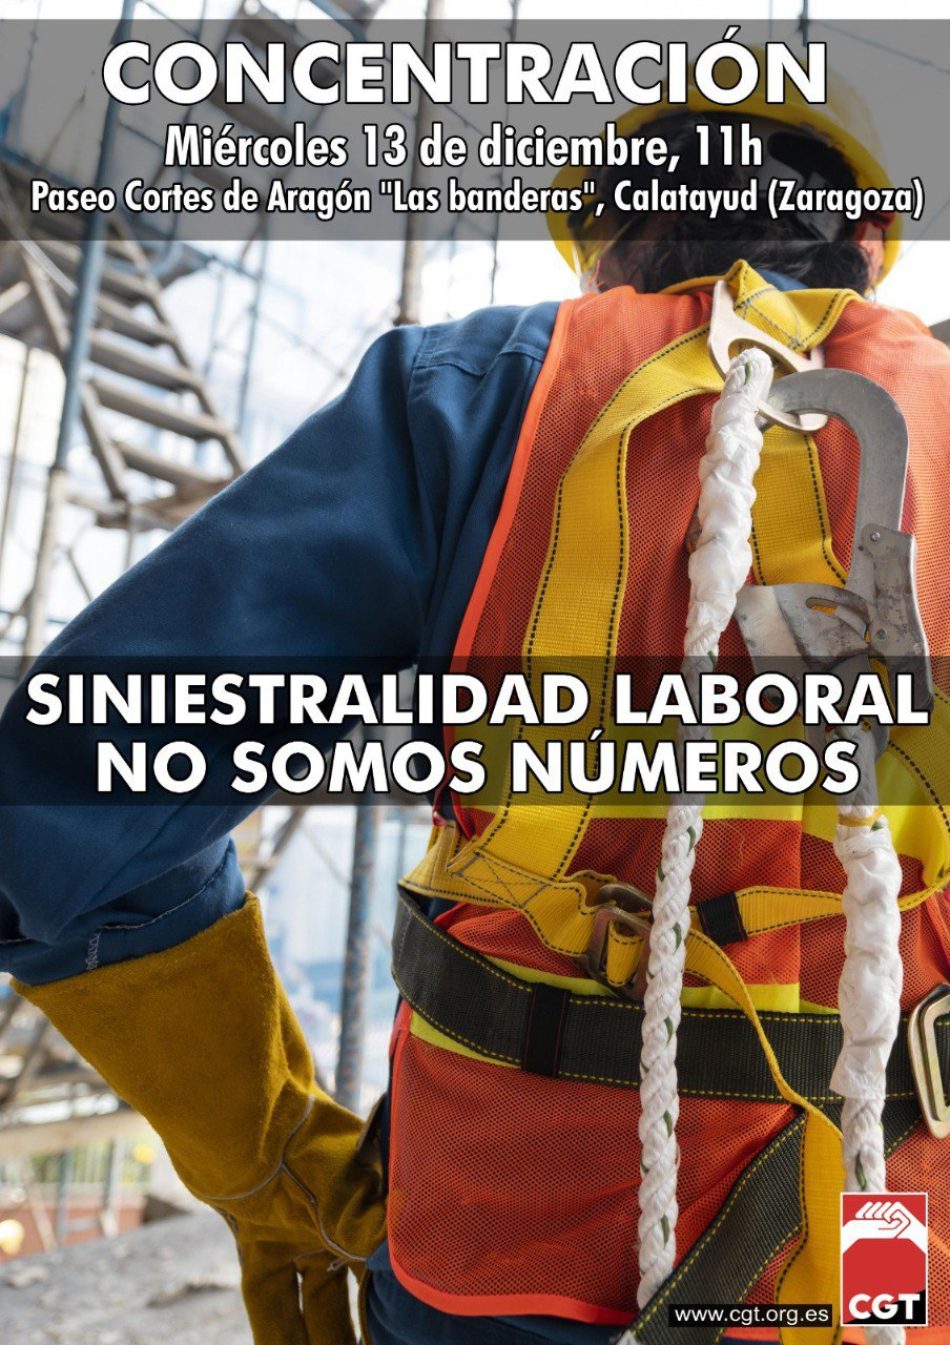 CGT se manifestará el próximo 13 de diciembre en Calatayud dentro del marco de movilizaciones en todo el estado español contra la siniestralidad laboral